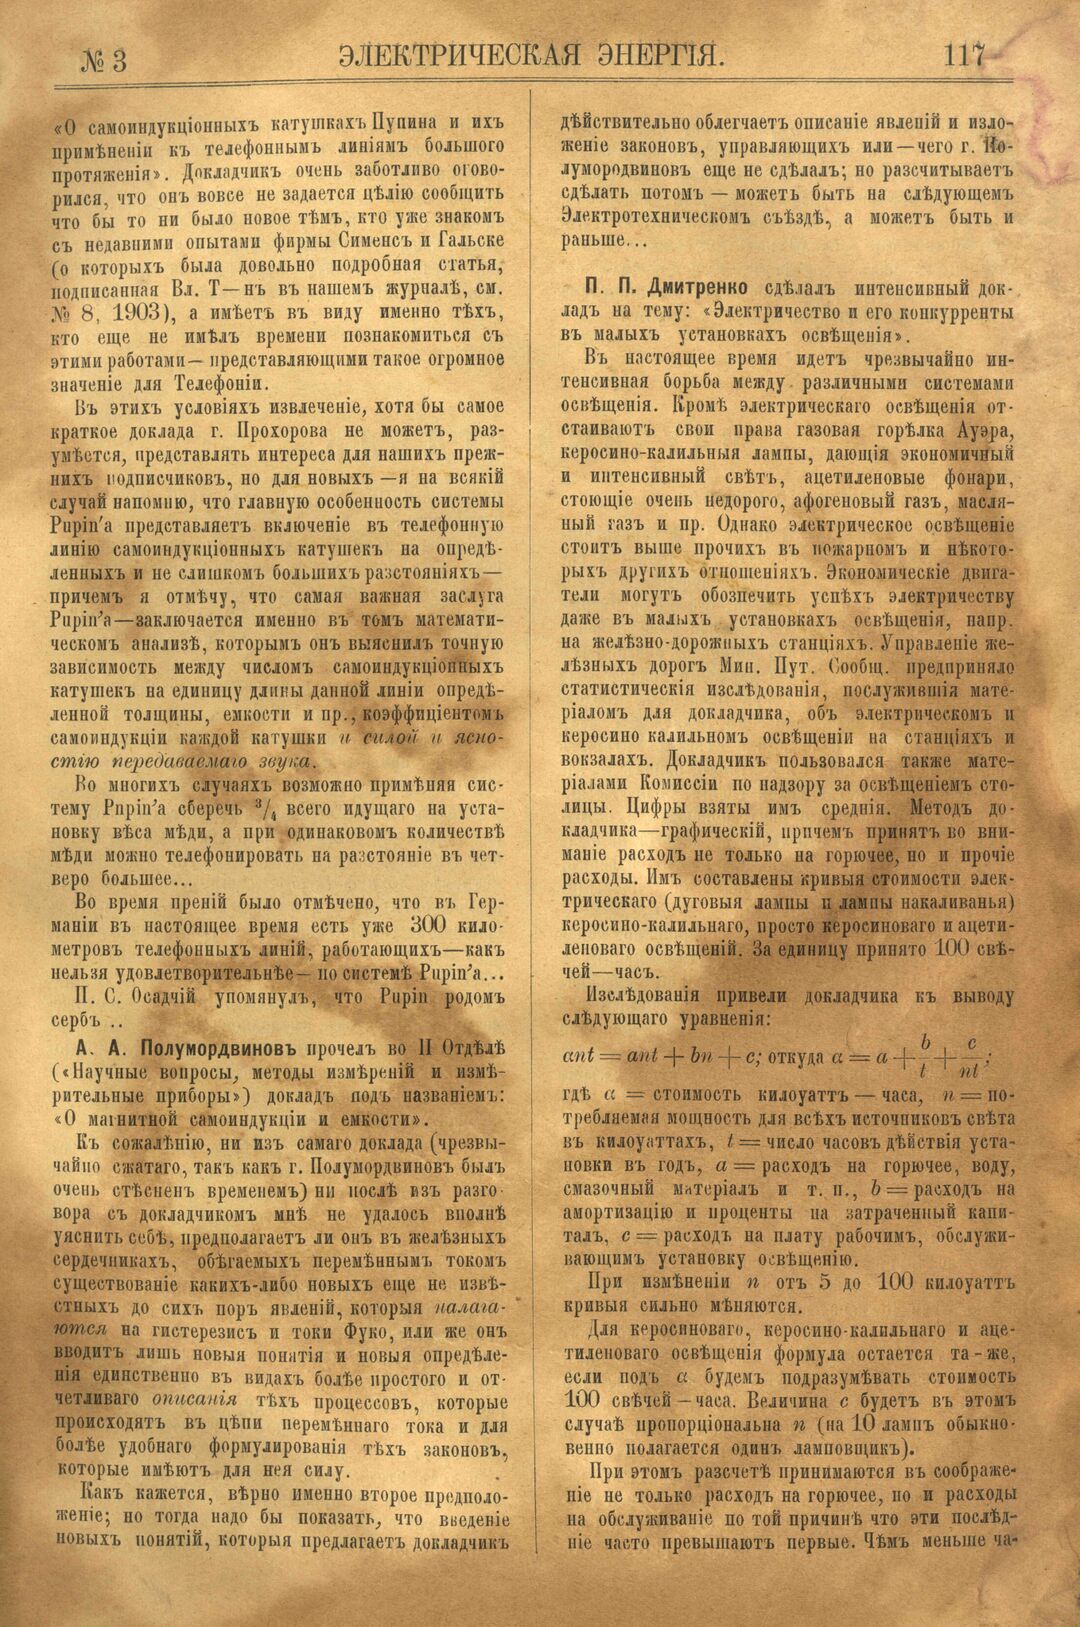 Рис. 1. Журнал Электрическая Энергiя, 3 номер, март, 1904 года, страница 117